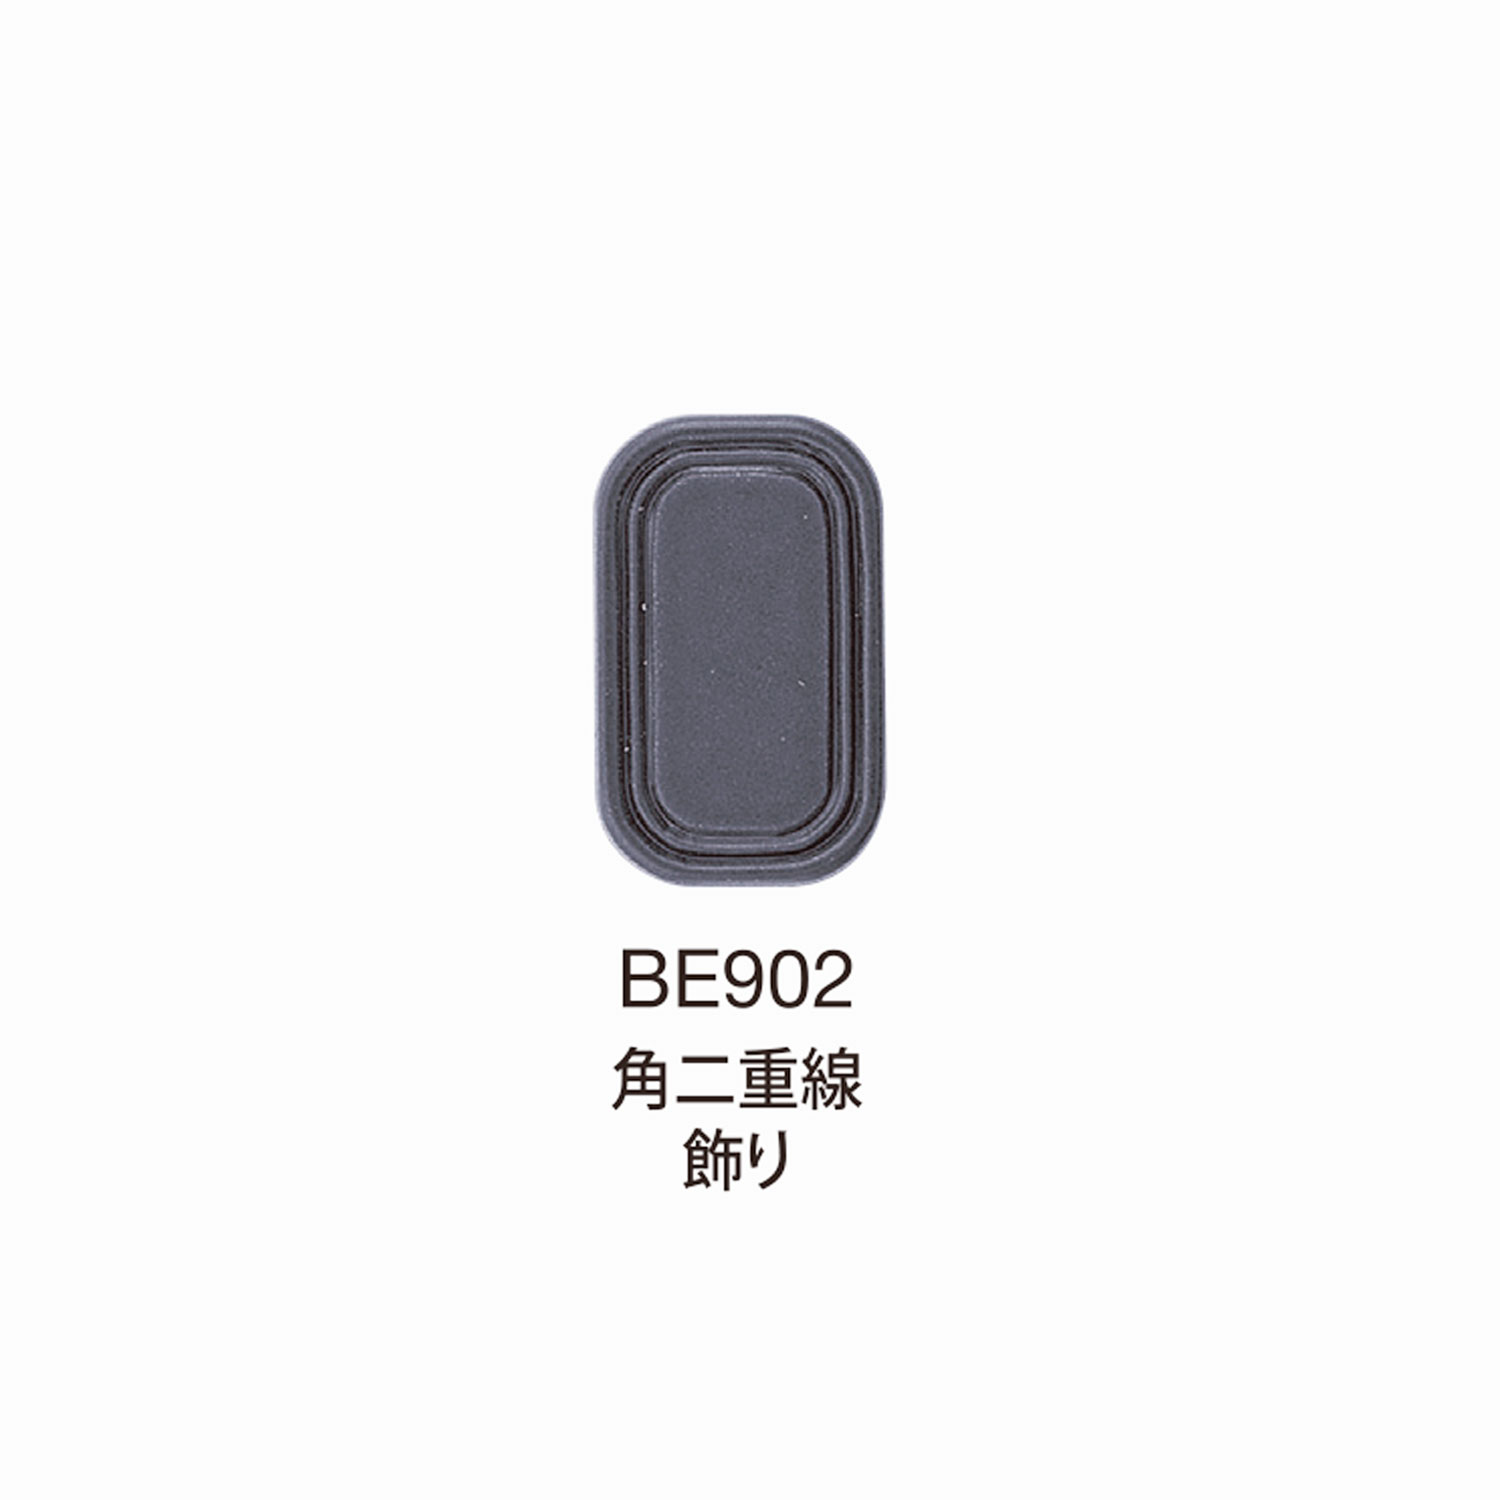 BE902 BEREX α Top Hardware Esquina Decoración De Doble Línea[Hebillas Y Anillo] Morito